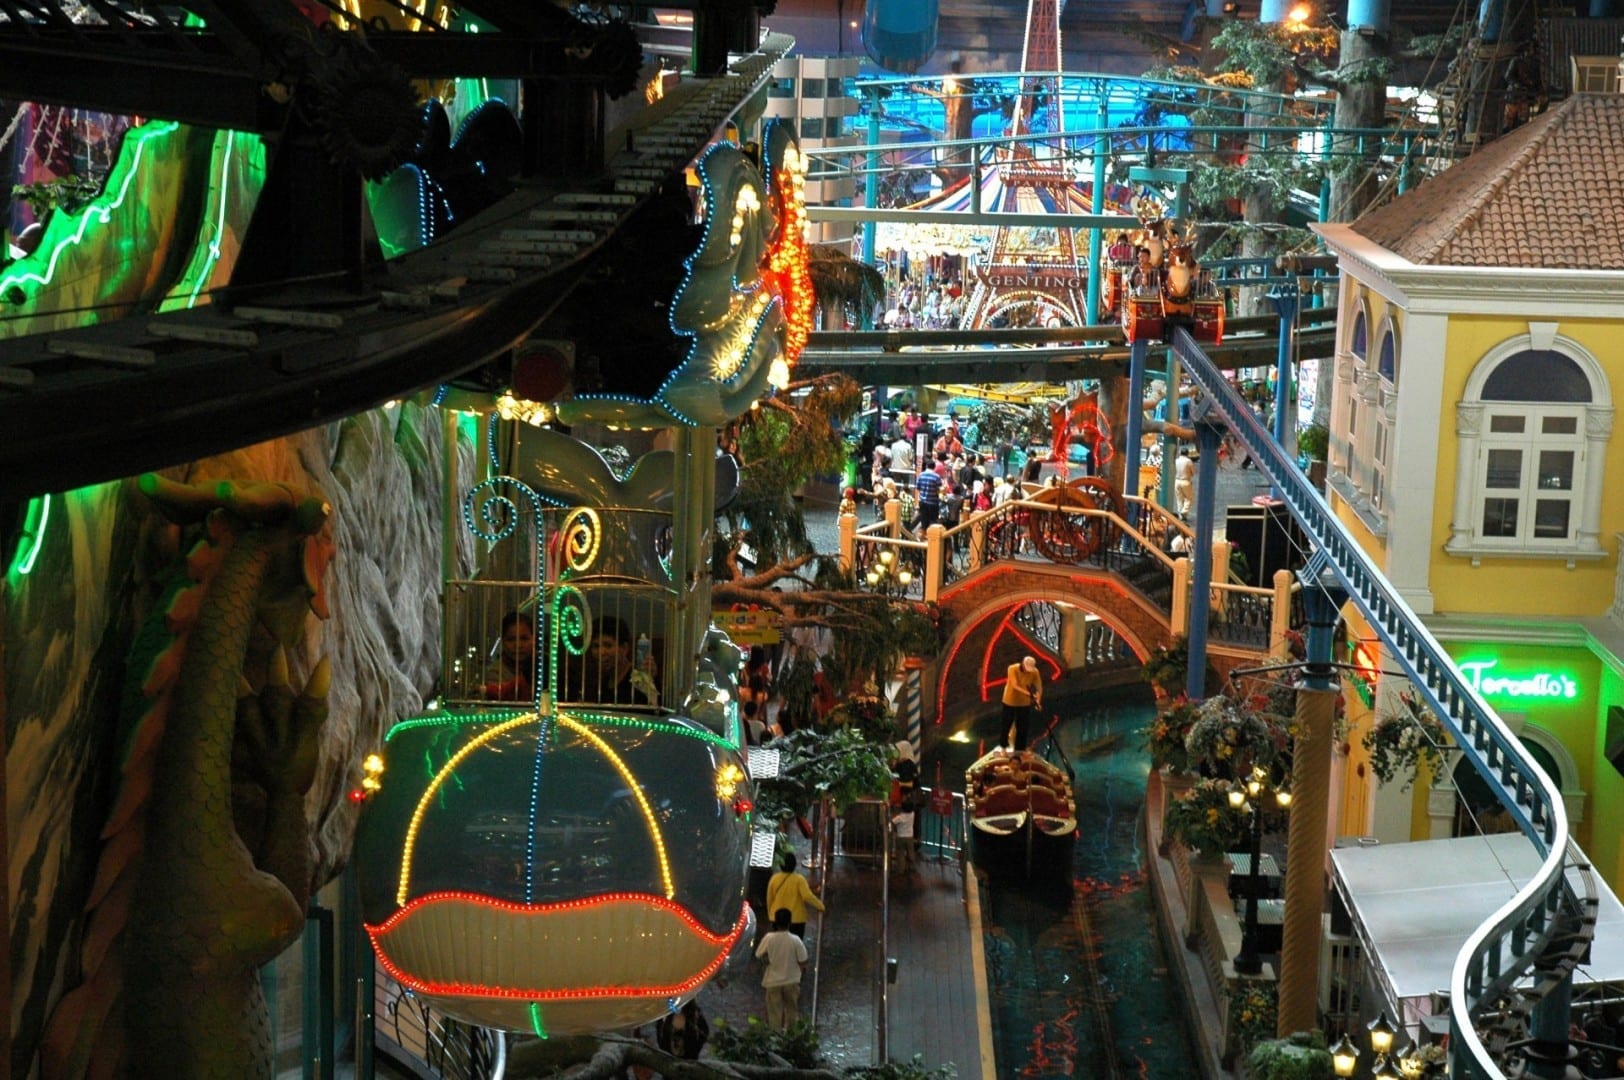 El oscuro y surrealista kitsch del parque temático interior del First World Plaza, el centro comercial de compras. Genting Highlands Malasia